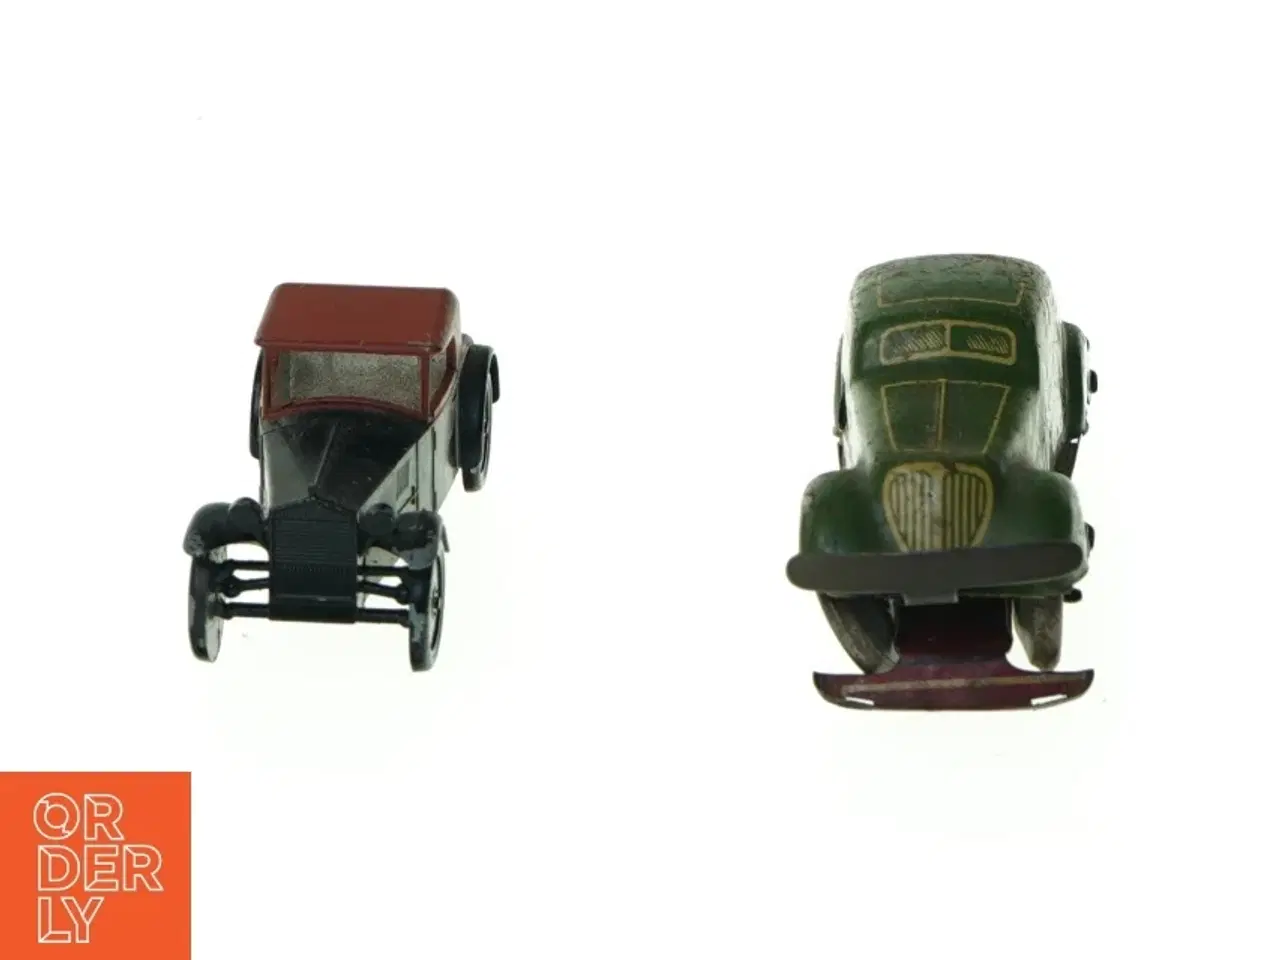 Billede 1 - Gamle biler (str. 10 x 3 cm)